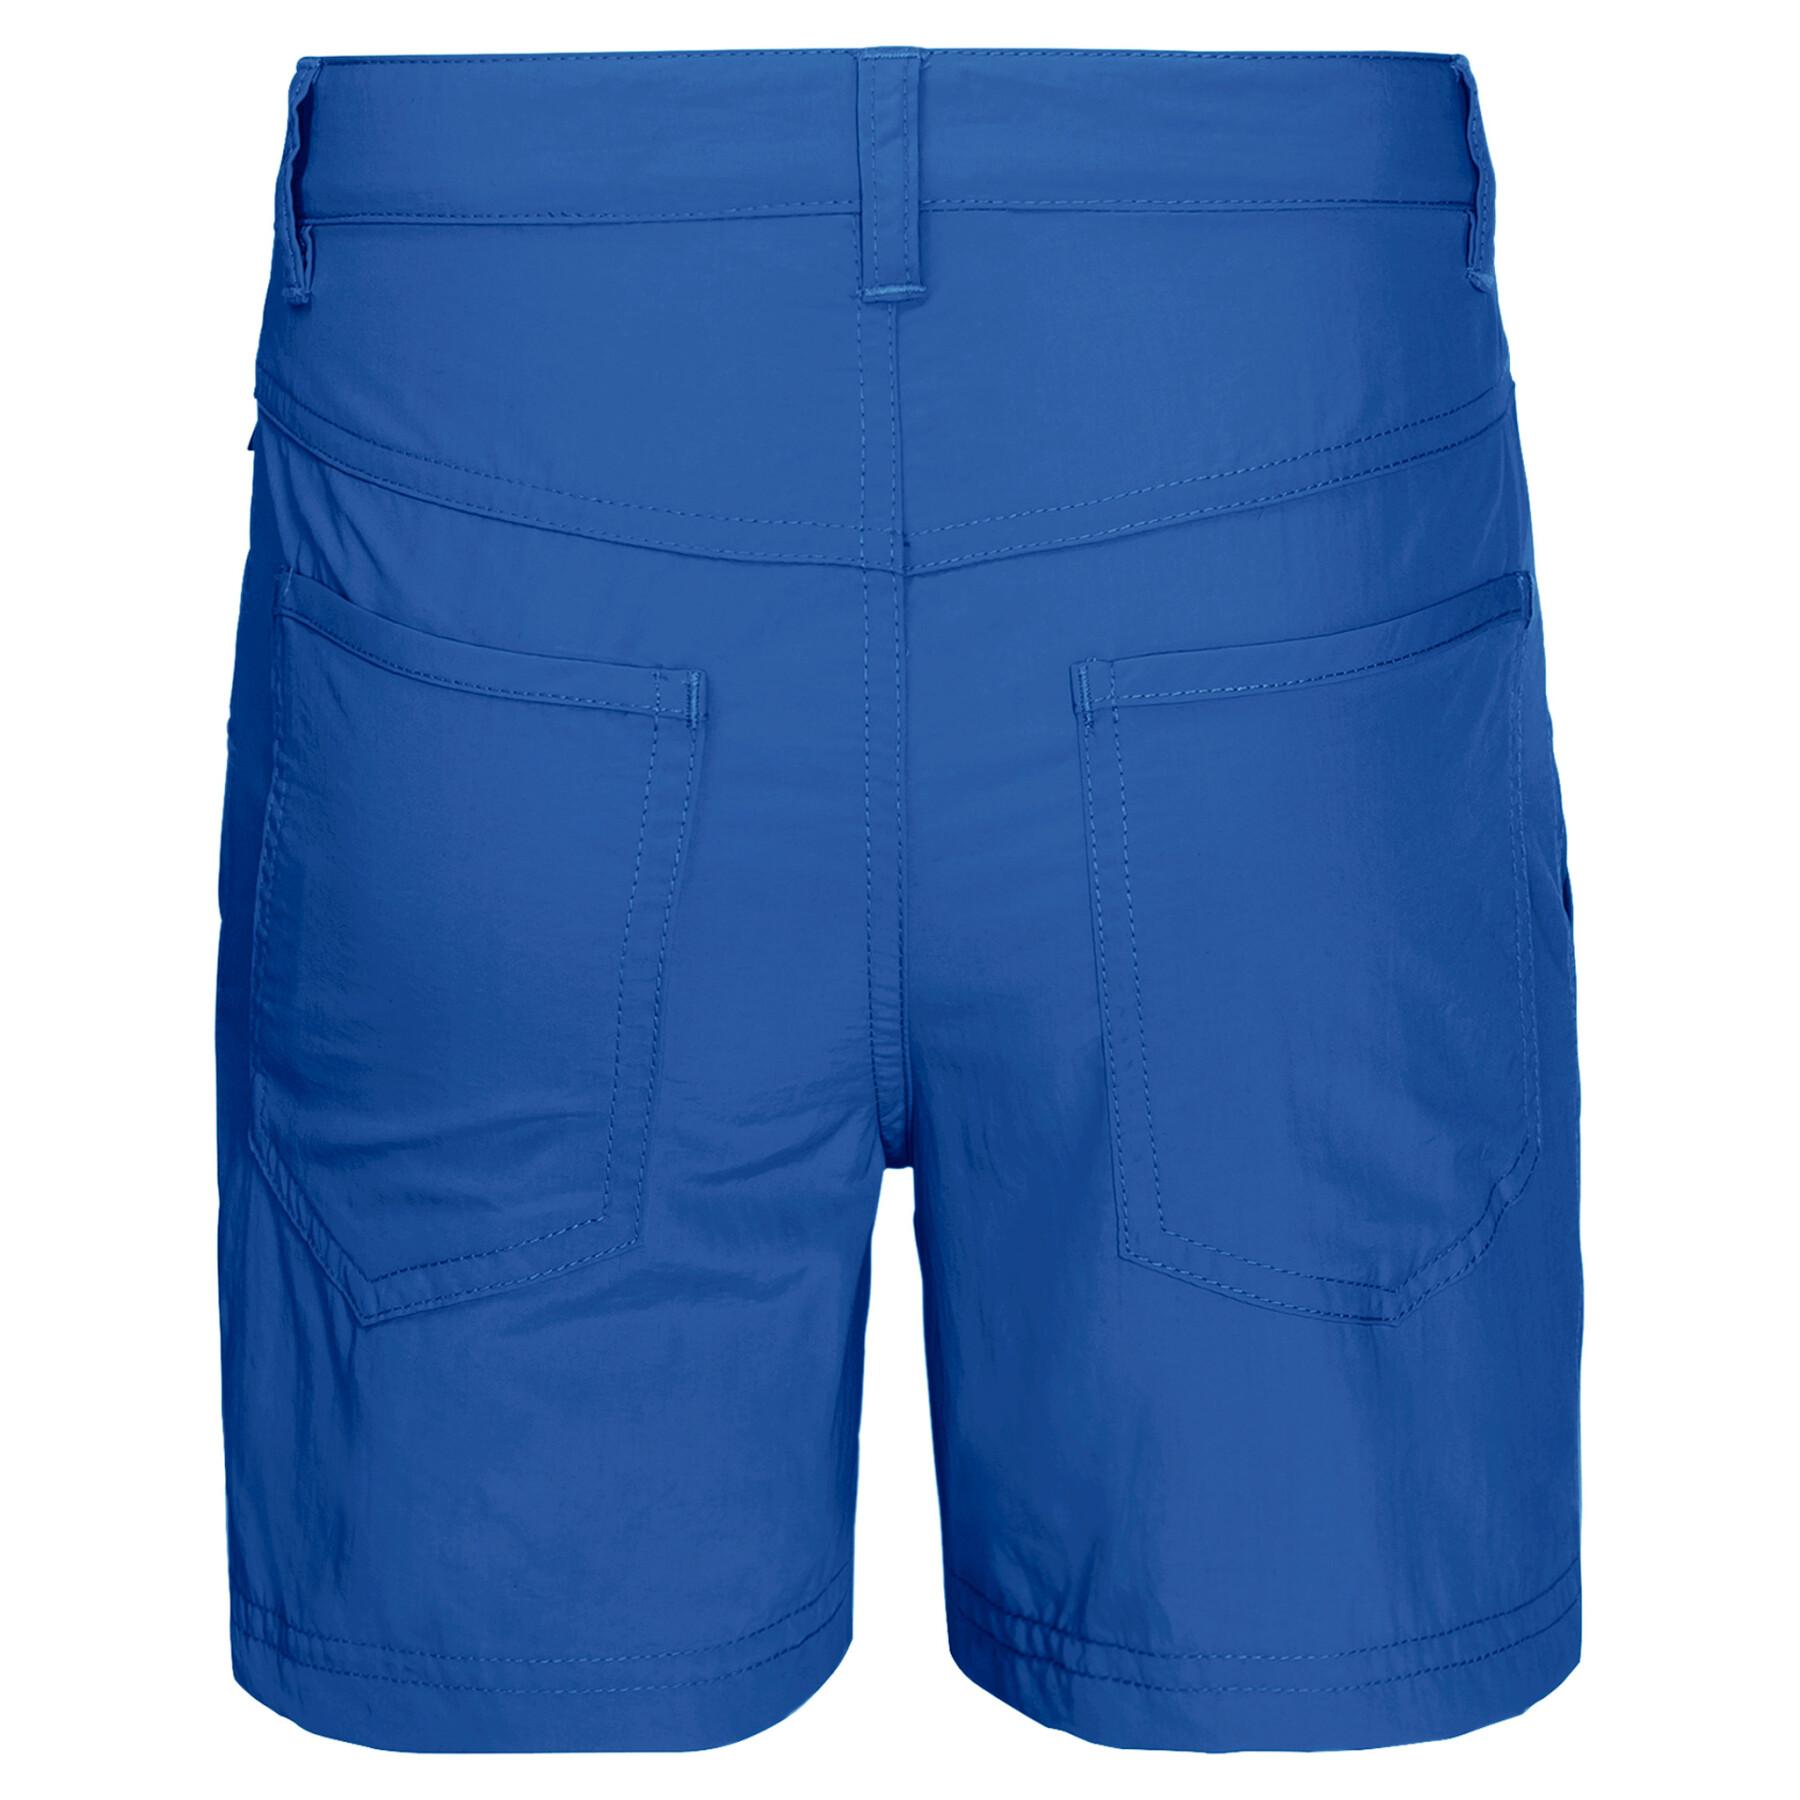 Pantalones cortos para niños Jack Wolfskin Suns